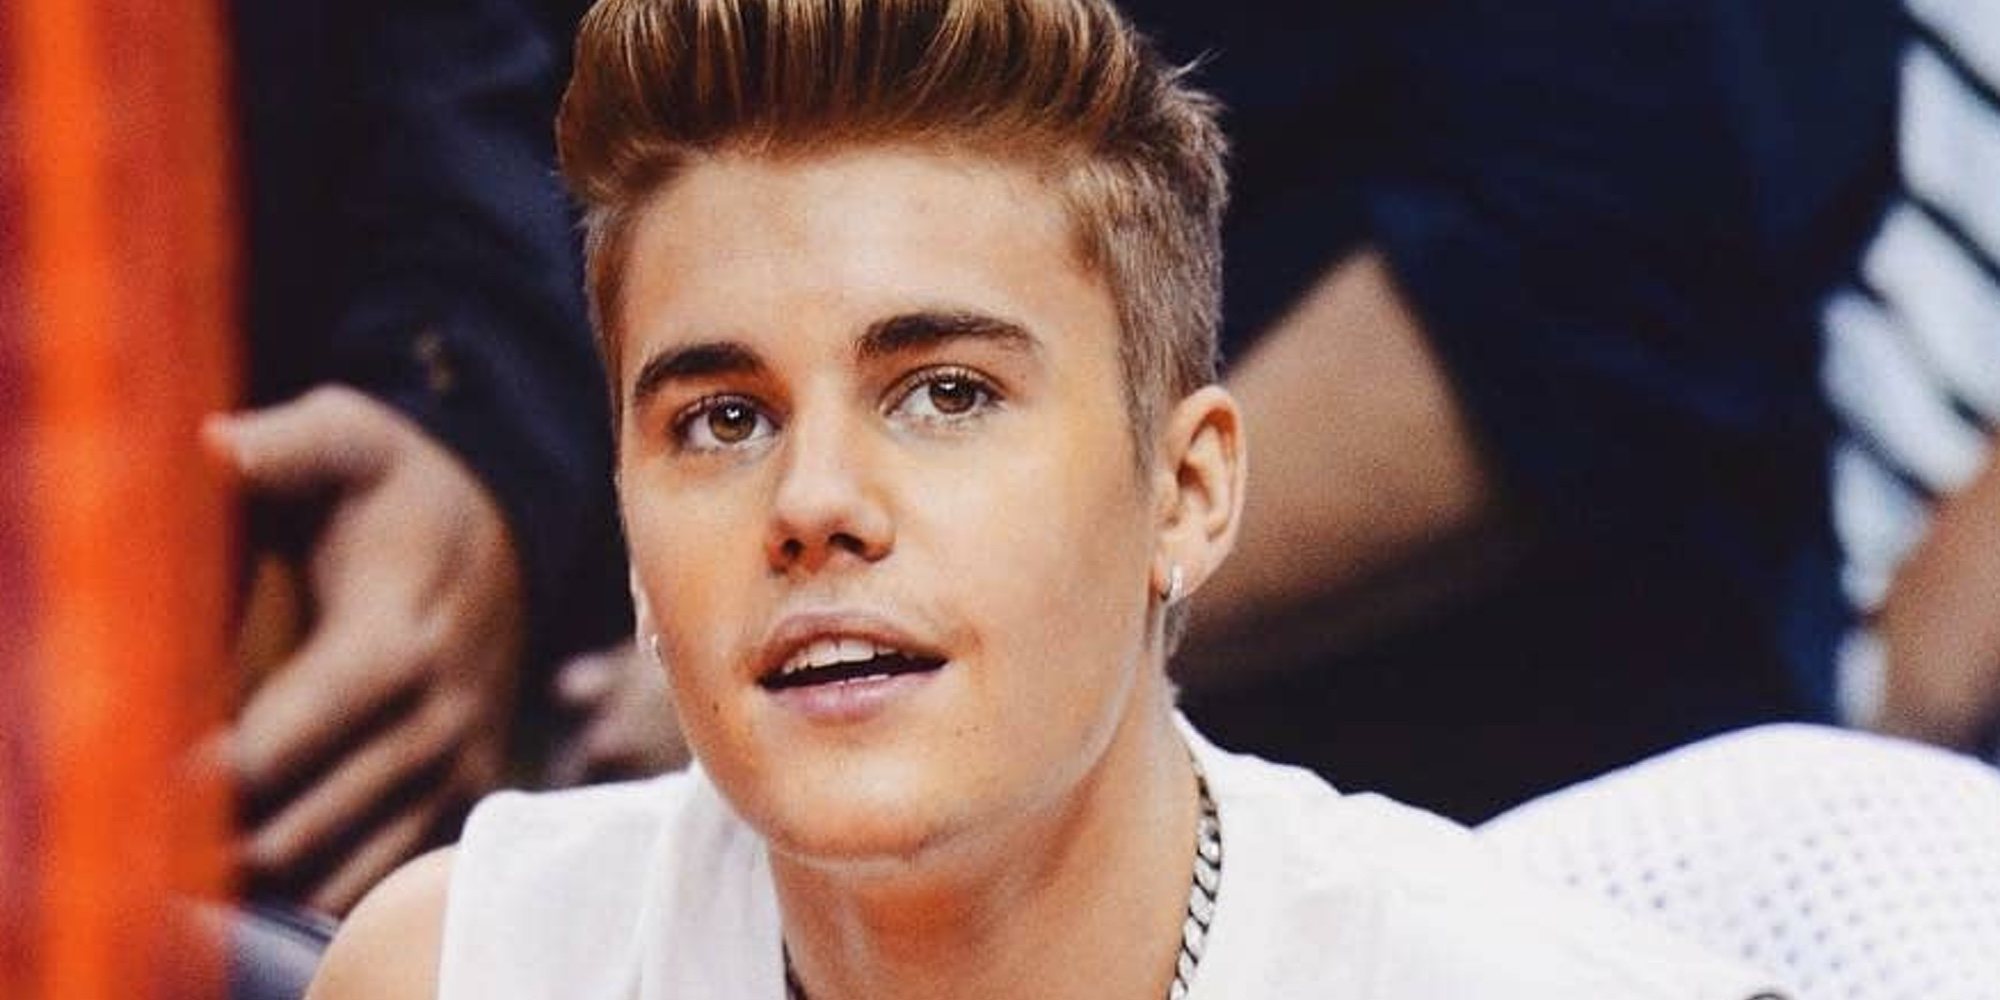 Justin Bieber pide disculpas por sus actitudes racistas cuando comenzó en la música